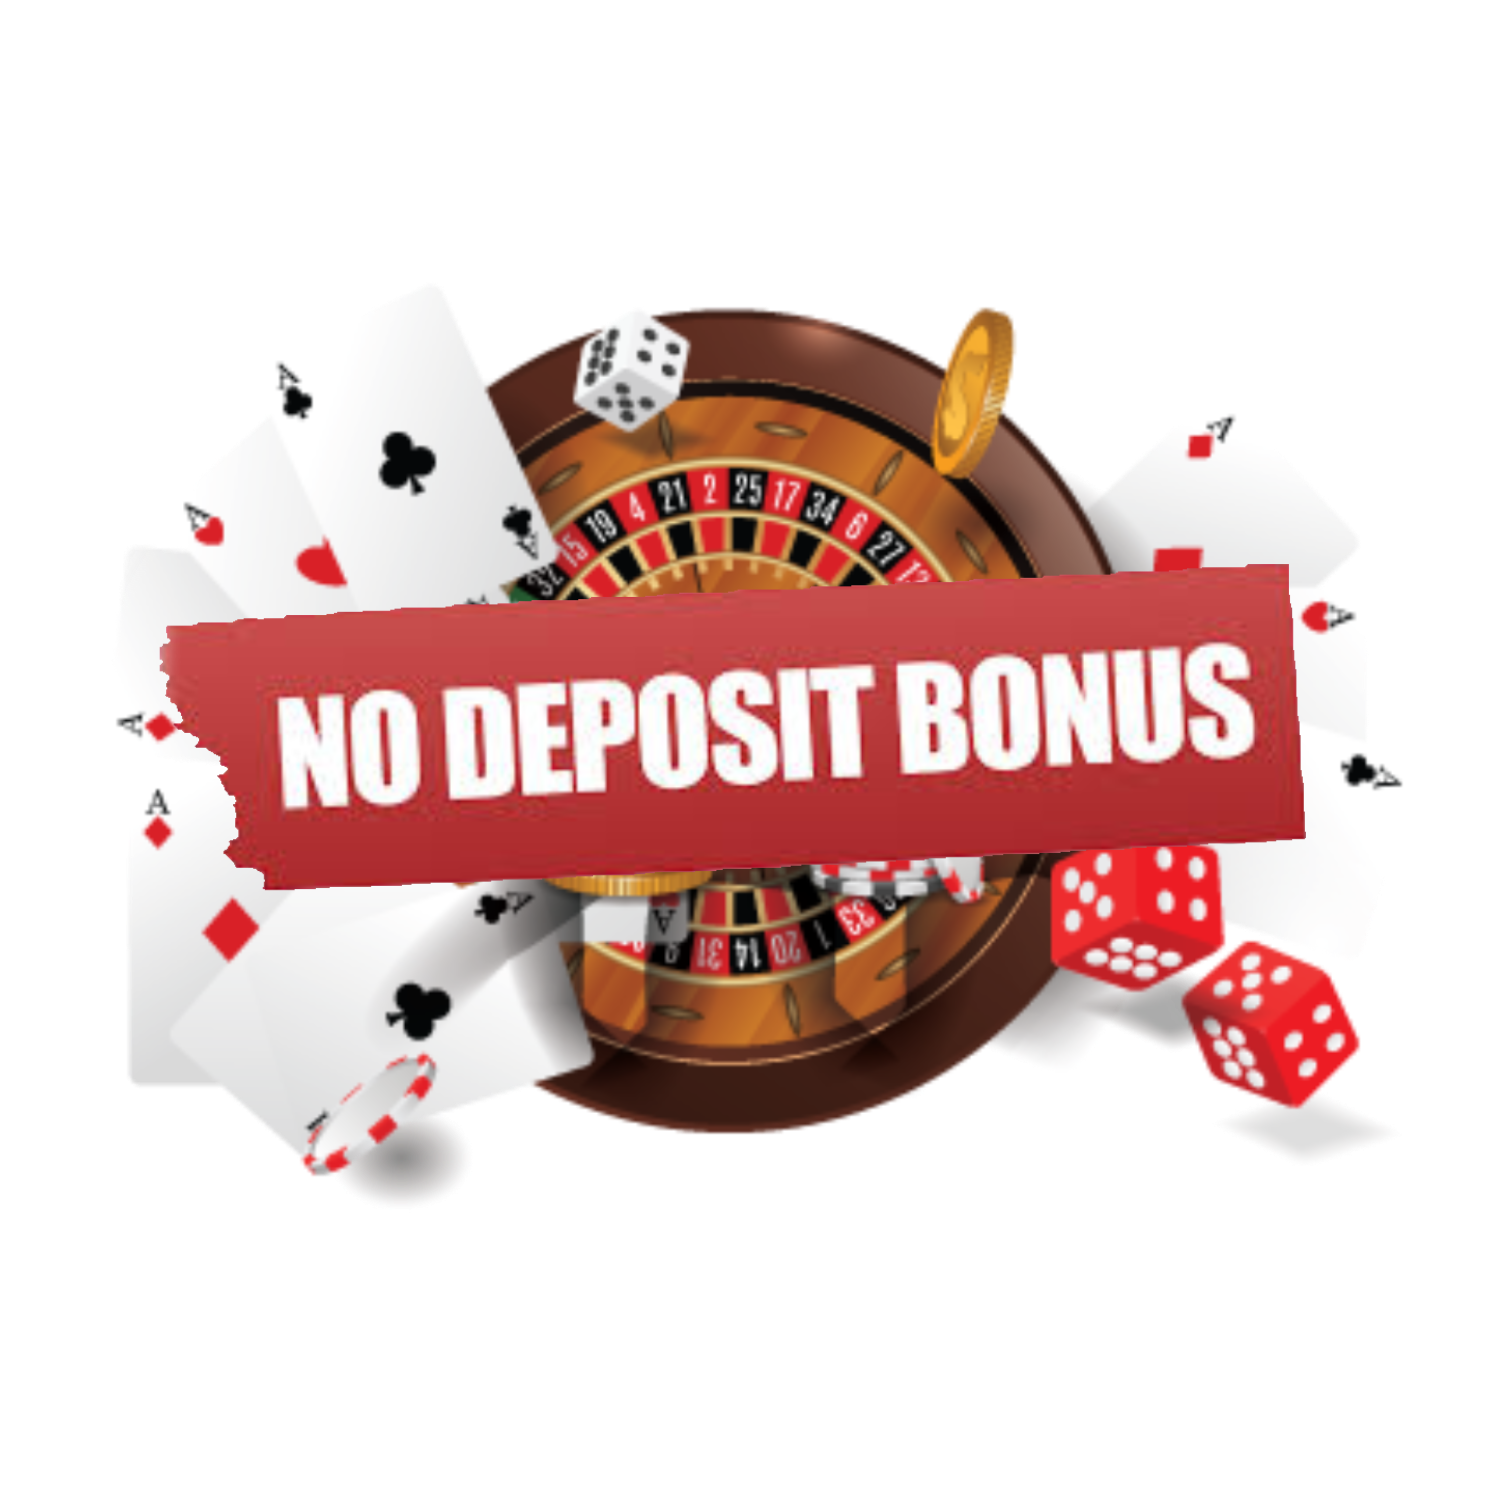 Usa casino online no deposit bonus как играть на деньги в покер 888 онлайн